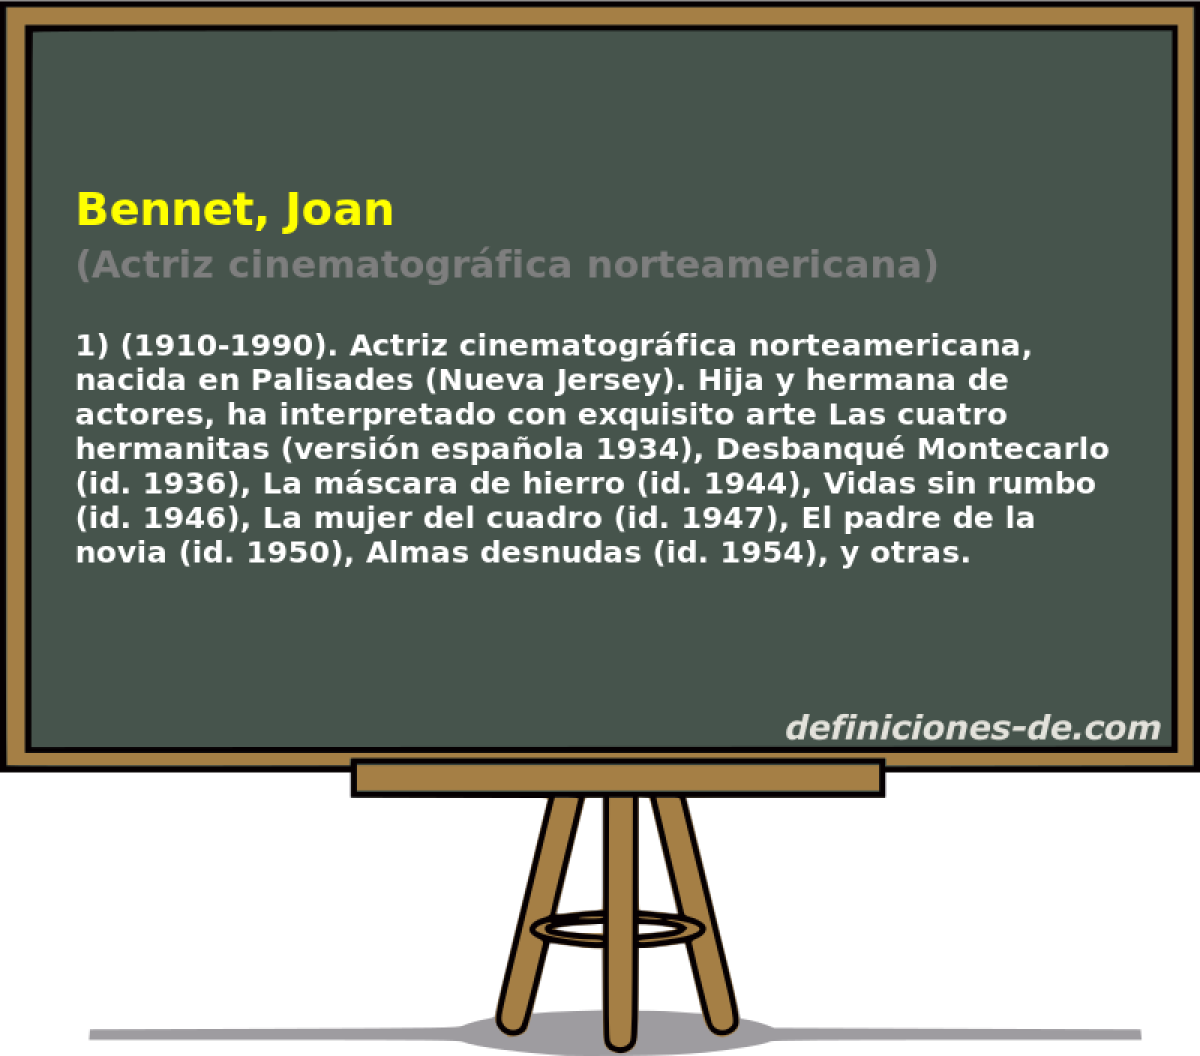 Bennet, Joan (Actriz cinematogrfica norteamericana)